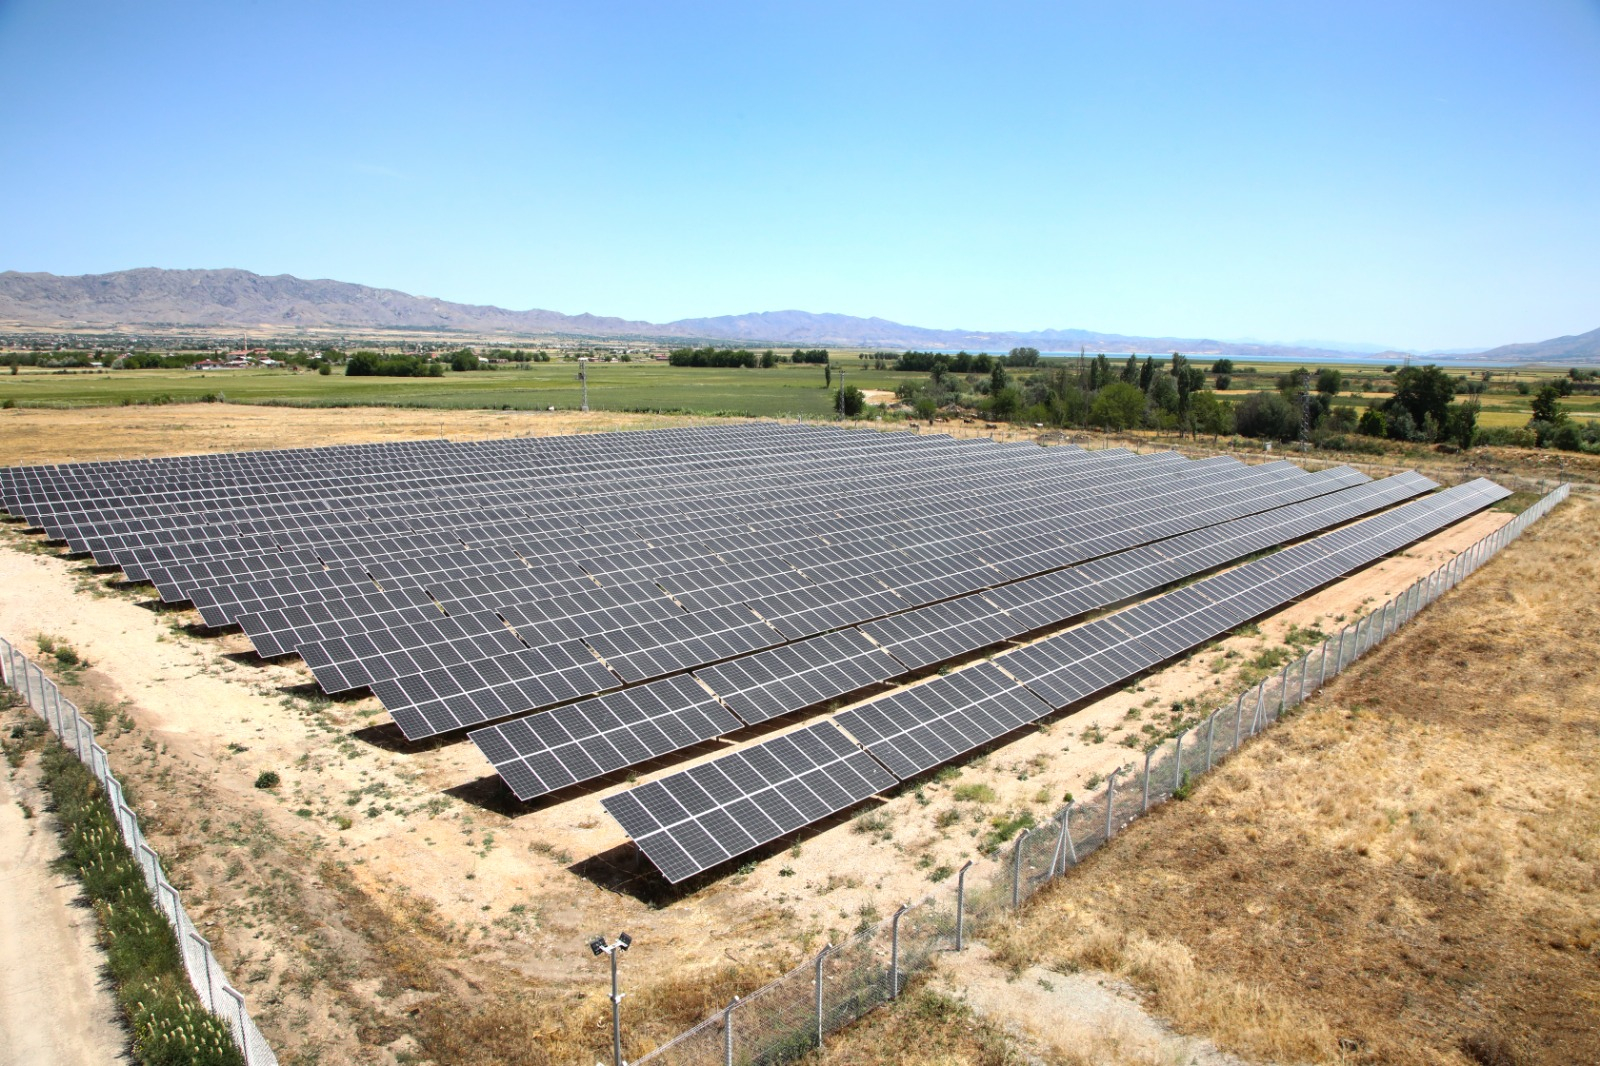  Elazığ’da Güneş Enerji Santrali (GES) Projesi Hayata Geçiyor